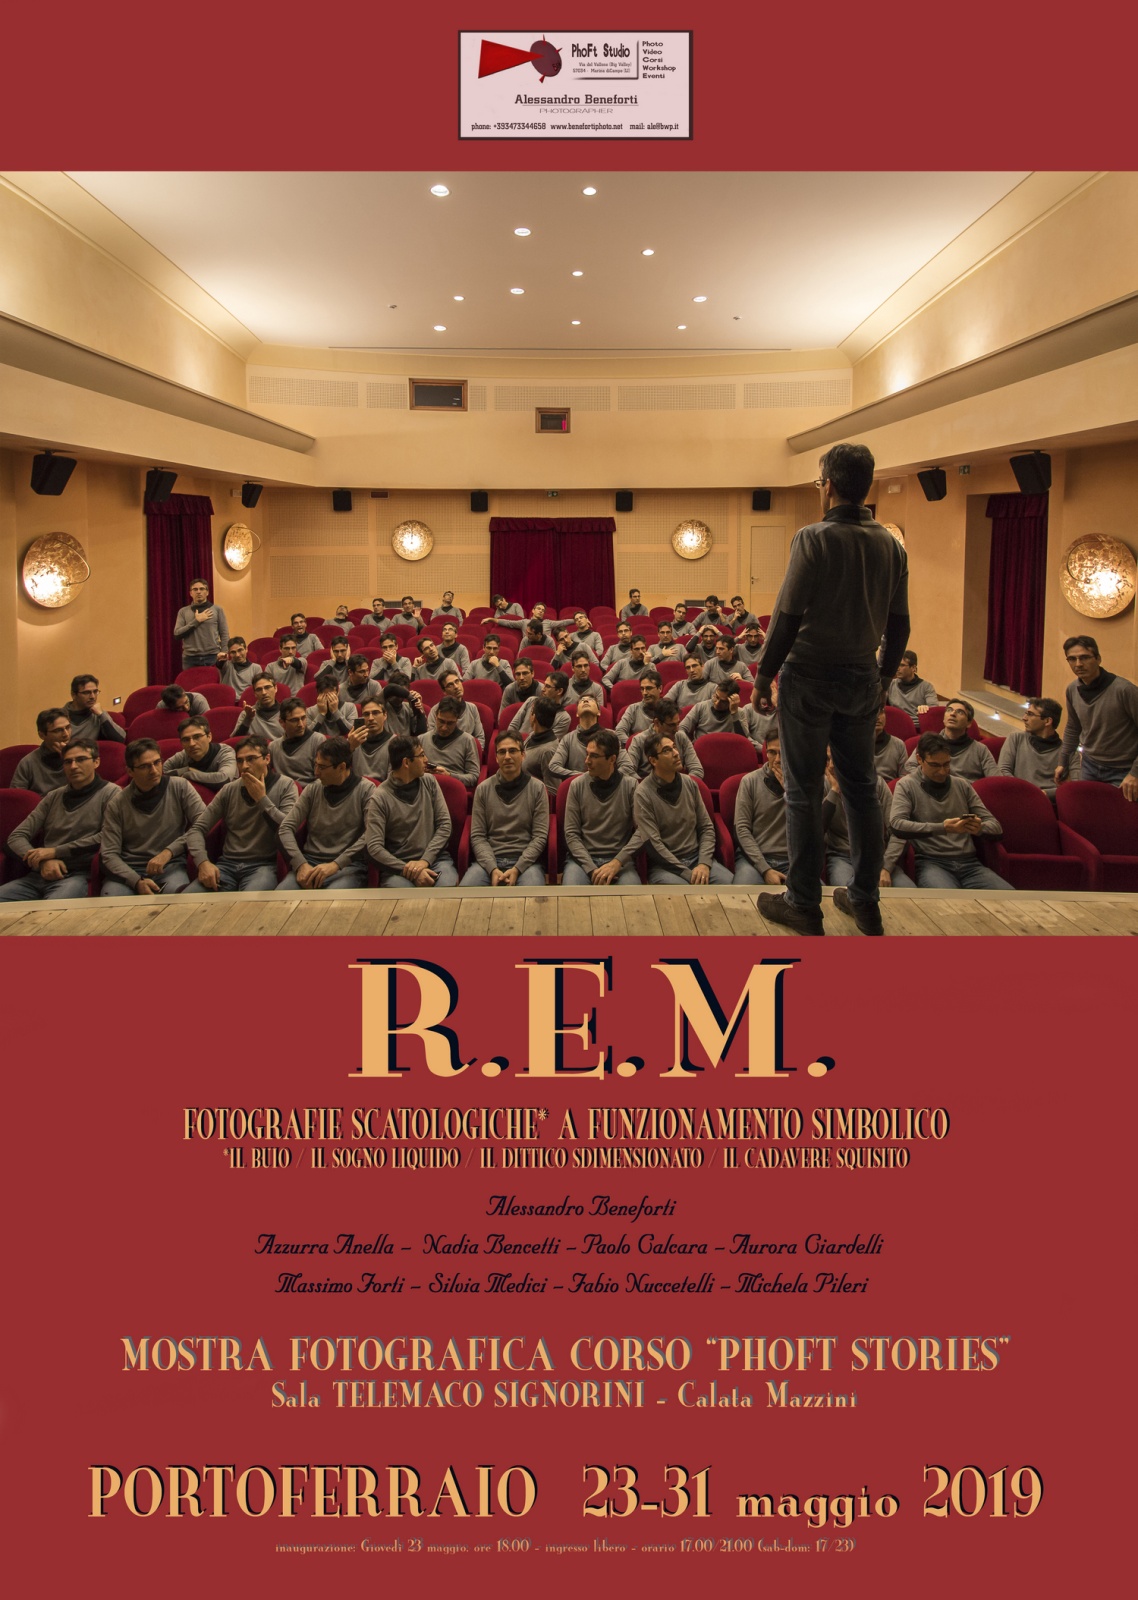 R.E.M. / Fotografie scatologiche a funzionamento simbolico